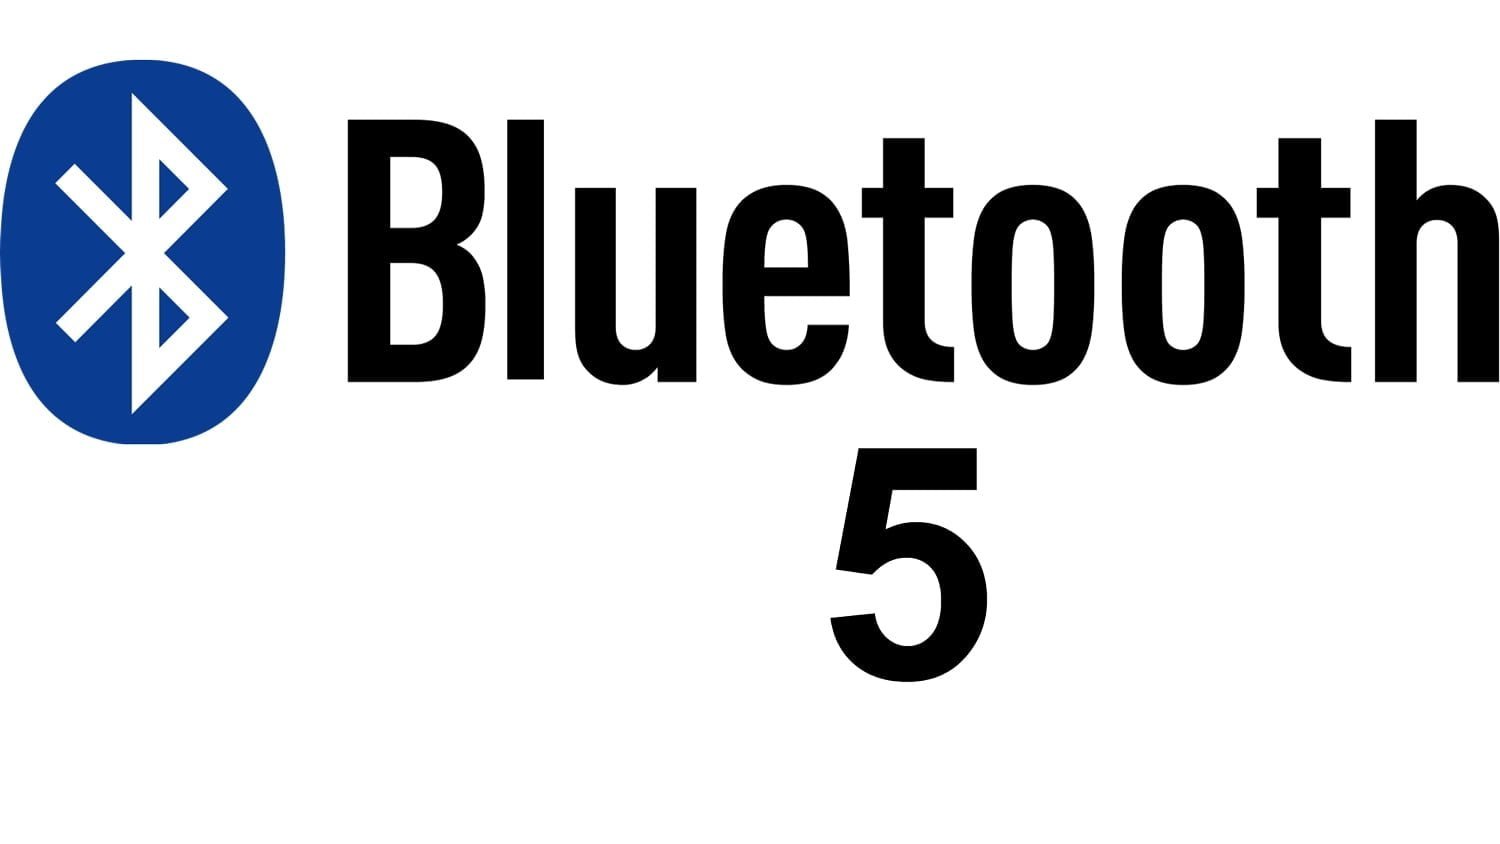 Версия блютуз 5. Bluetooth 5.0. Логотип Bluetooth 5.0. Значок блютуз 5.0. EC,,K.NEC.